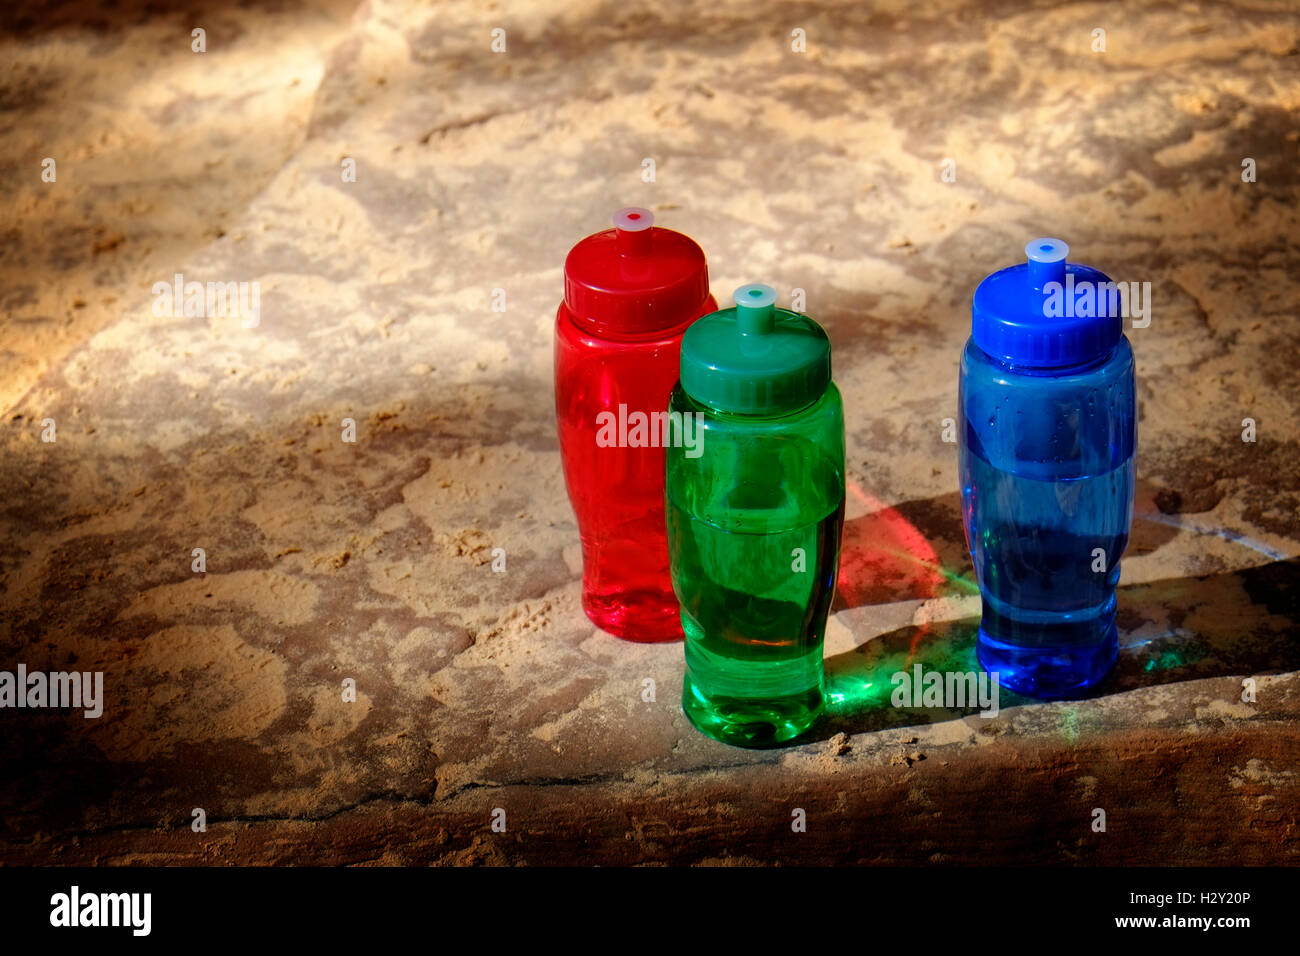 Dettagliato il rosso, il verde e il blu bottiglie su ruvide rocce Foto Stock